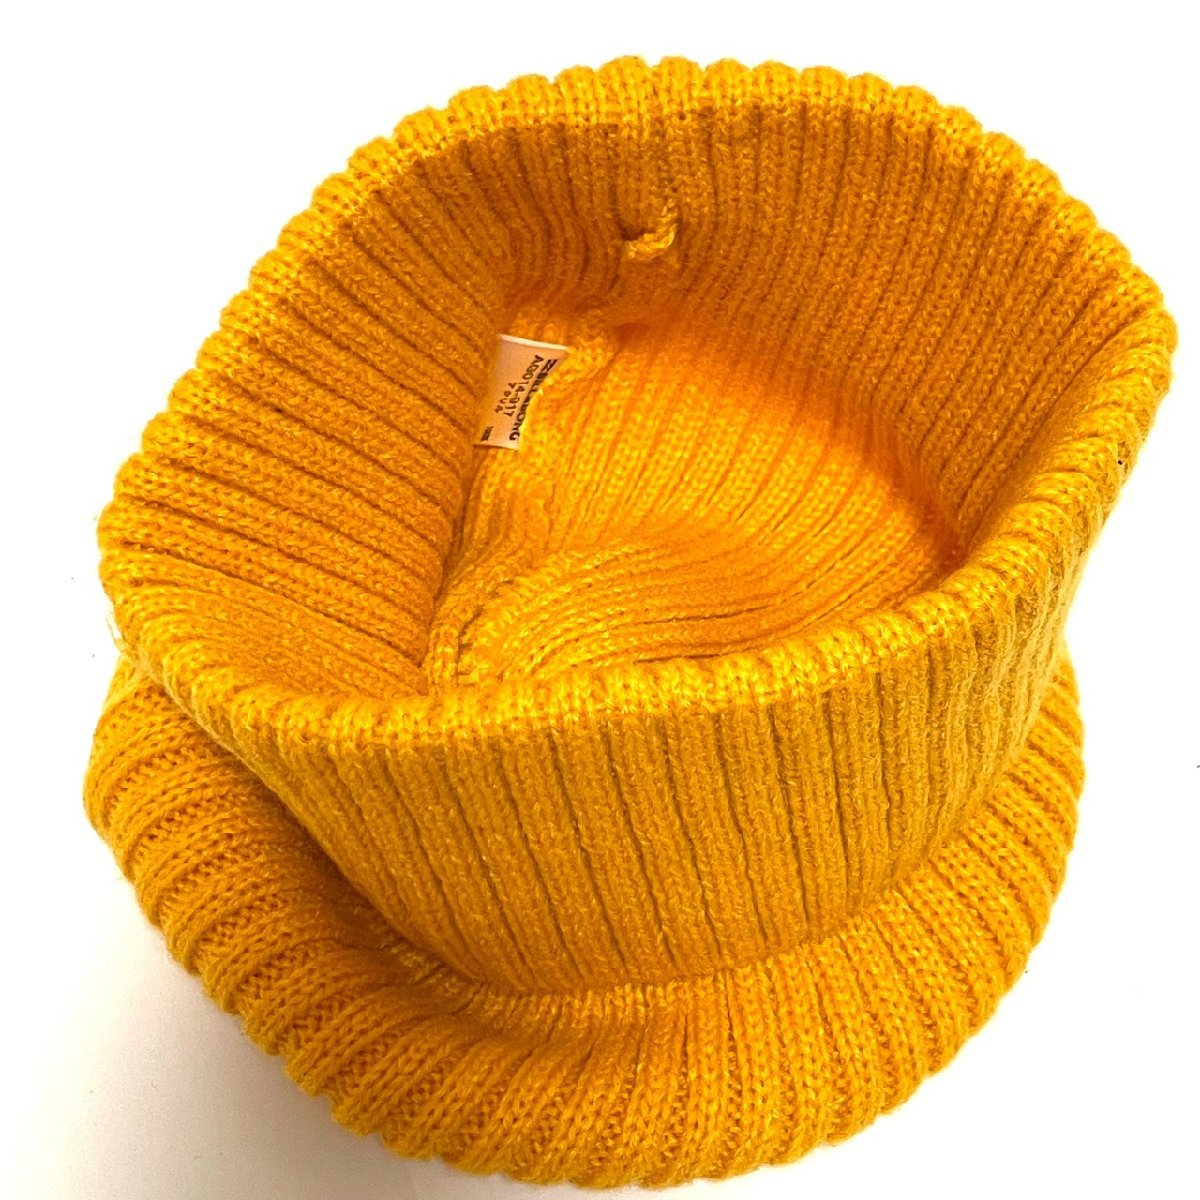 (^w^)b Billabong вязаная шапка шляпа bi колено колпак желтый BILLABONG бирка one отметка простой Surf симпатичный осень-зима б/у одежда C0541EE